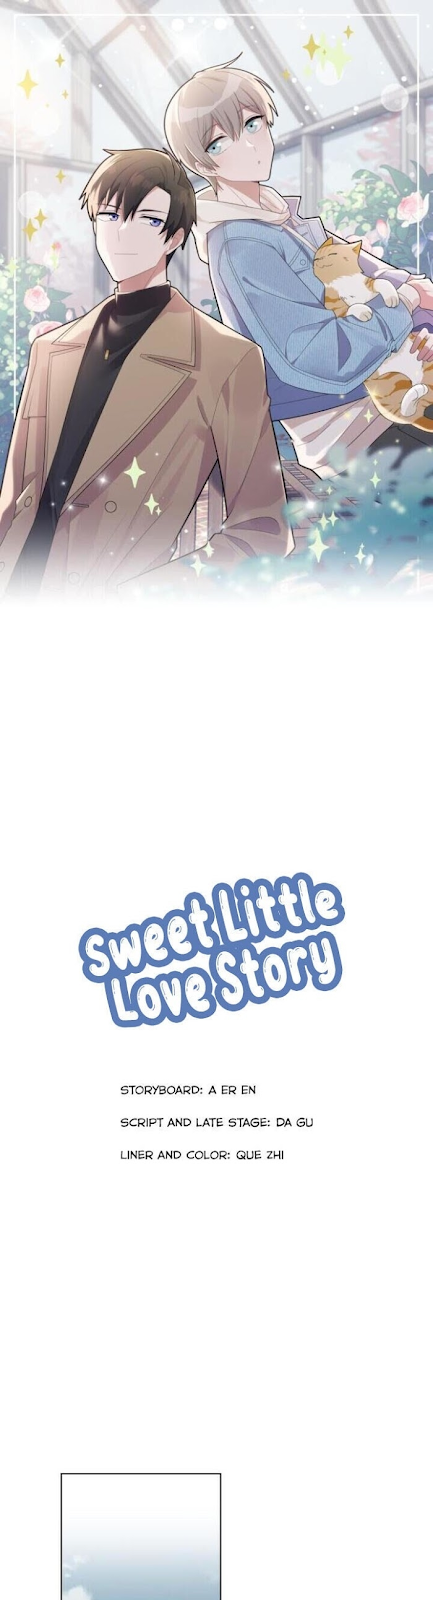 Sweet Little Love Story7 03